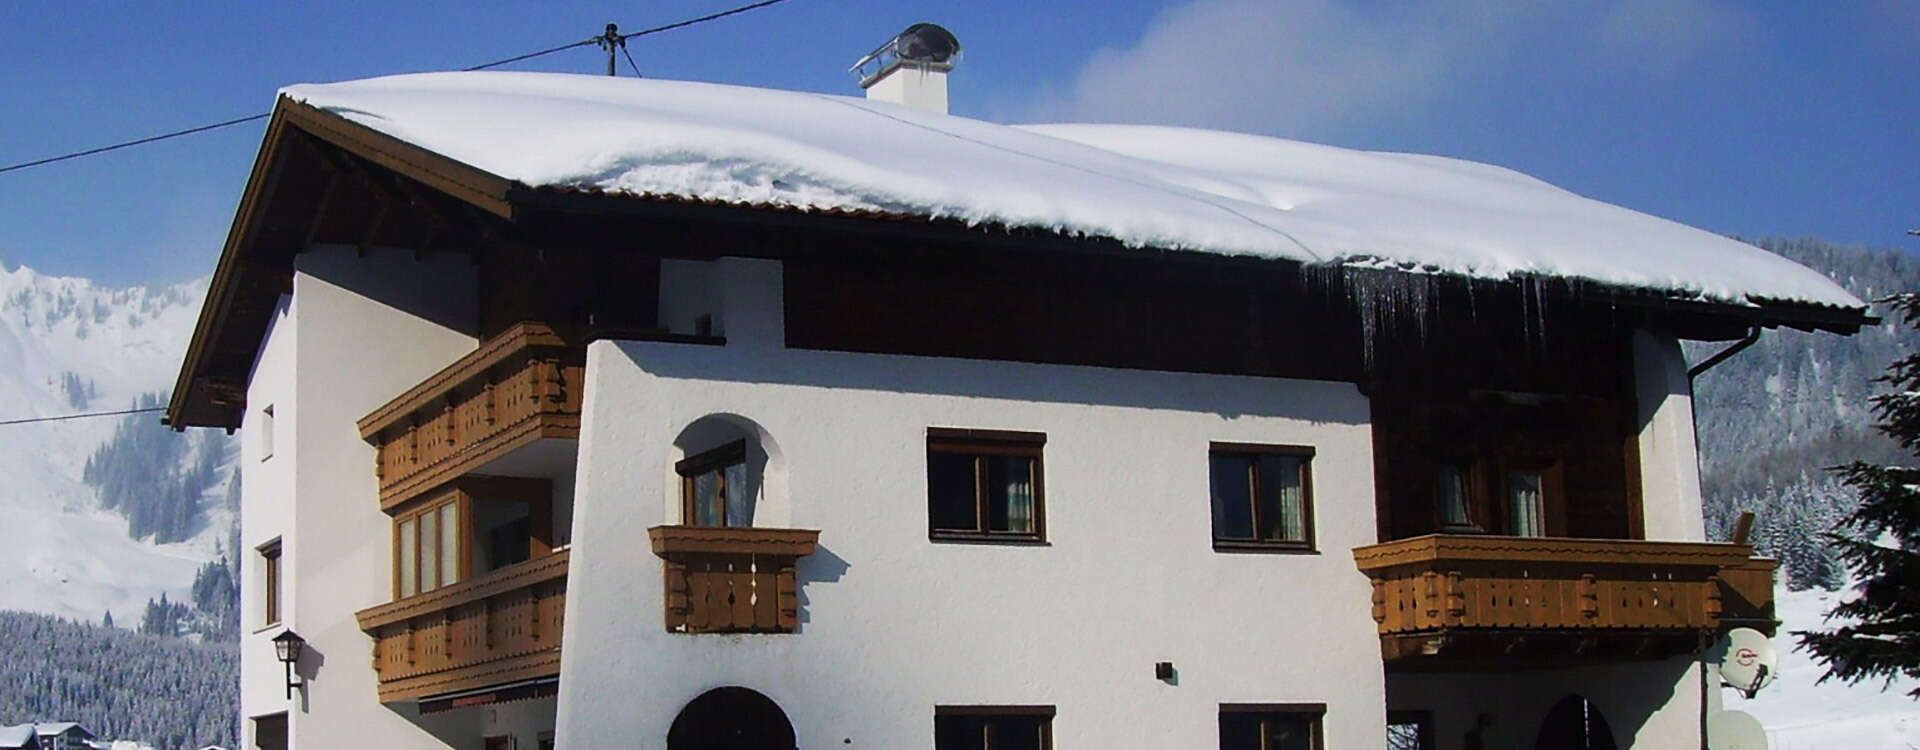 House Schöne Aussicht Berwang Tirol winter vacation